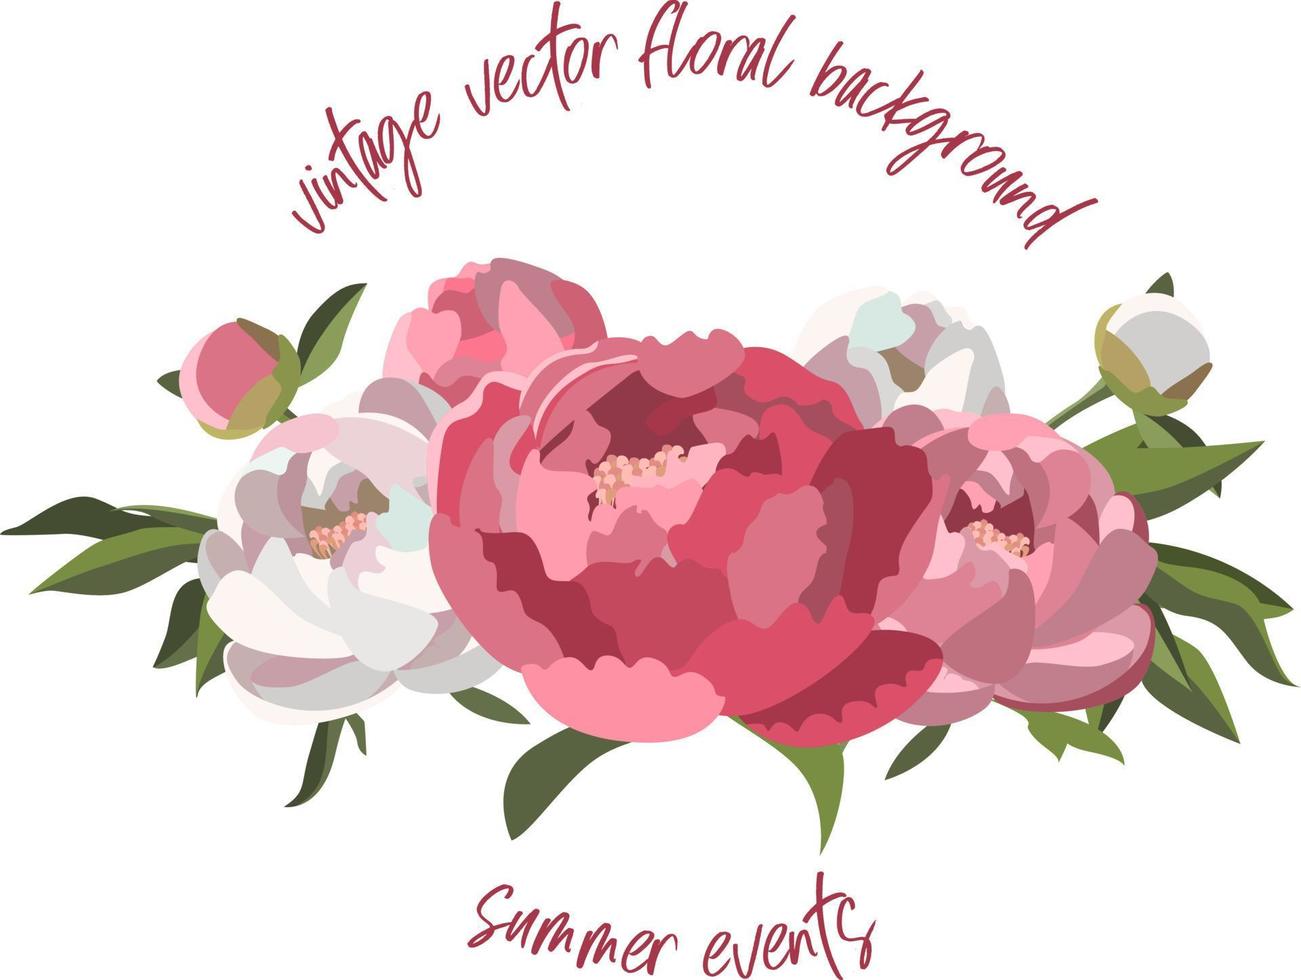 plantilla de fondo floral vectorial vintage para tarjetas de felicitación e invitaciones vector